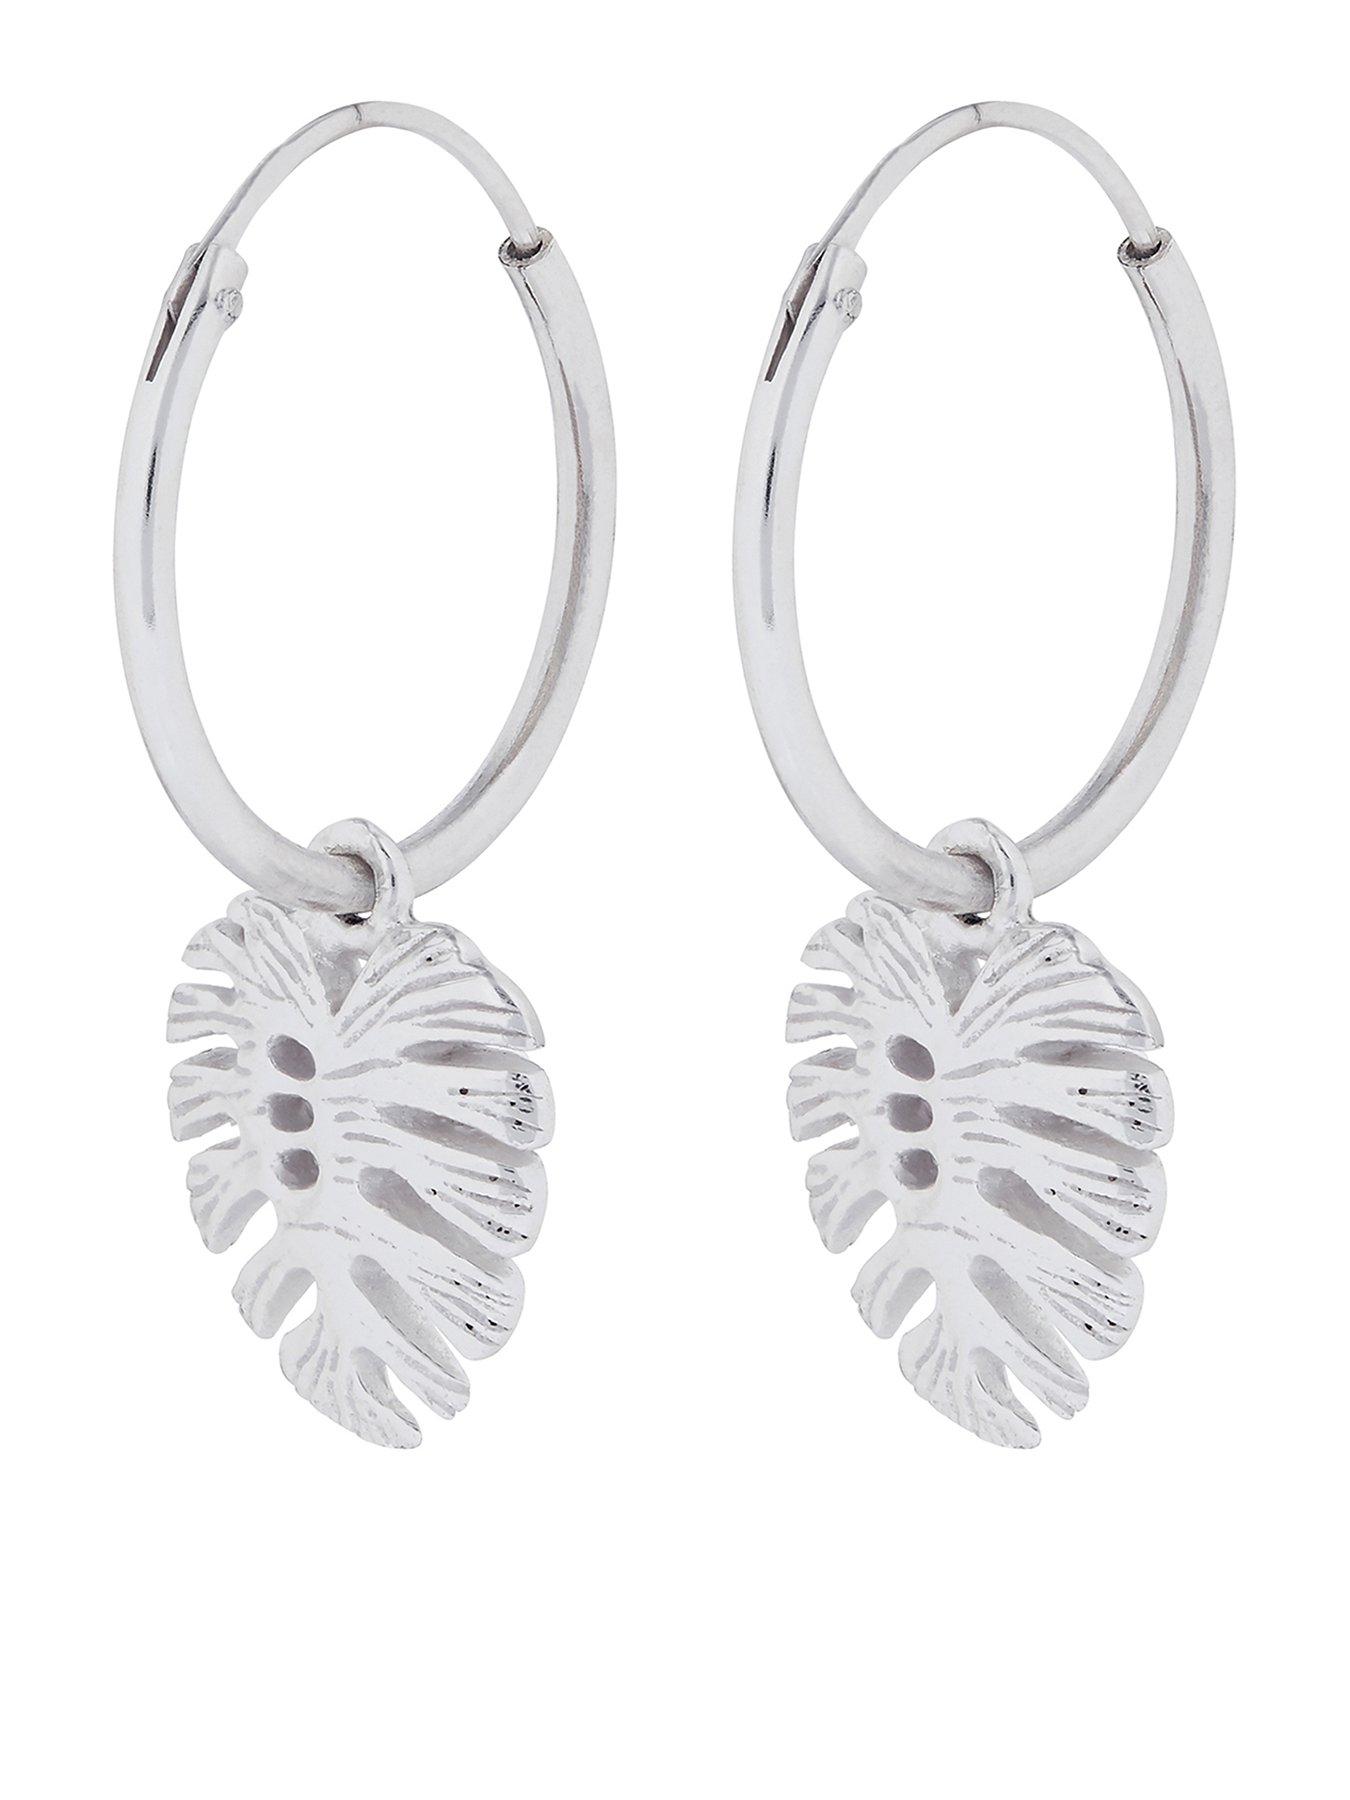 Accessorize Monstera Charm Hoop Earrings Silver - earring hoops roblox